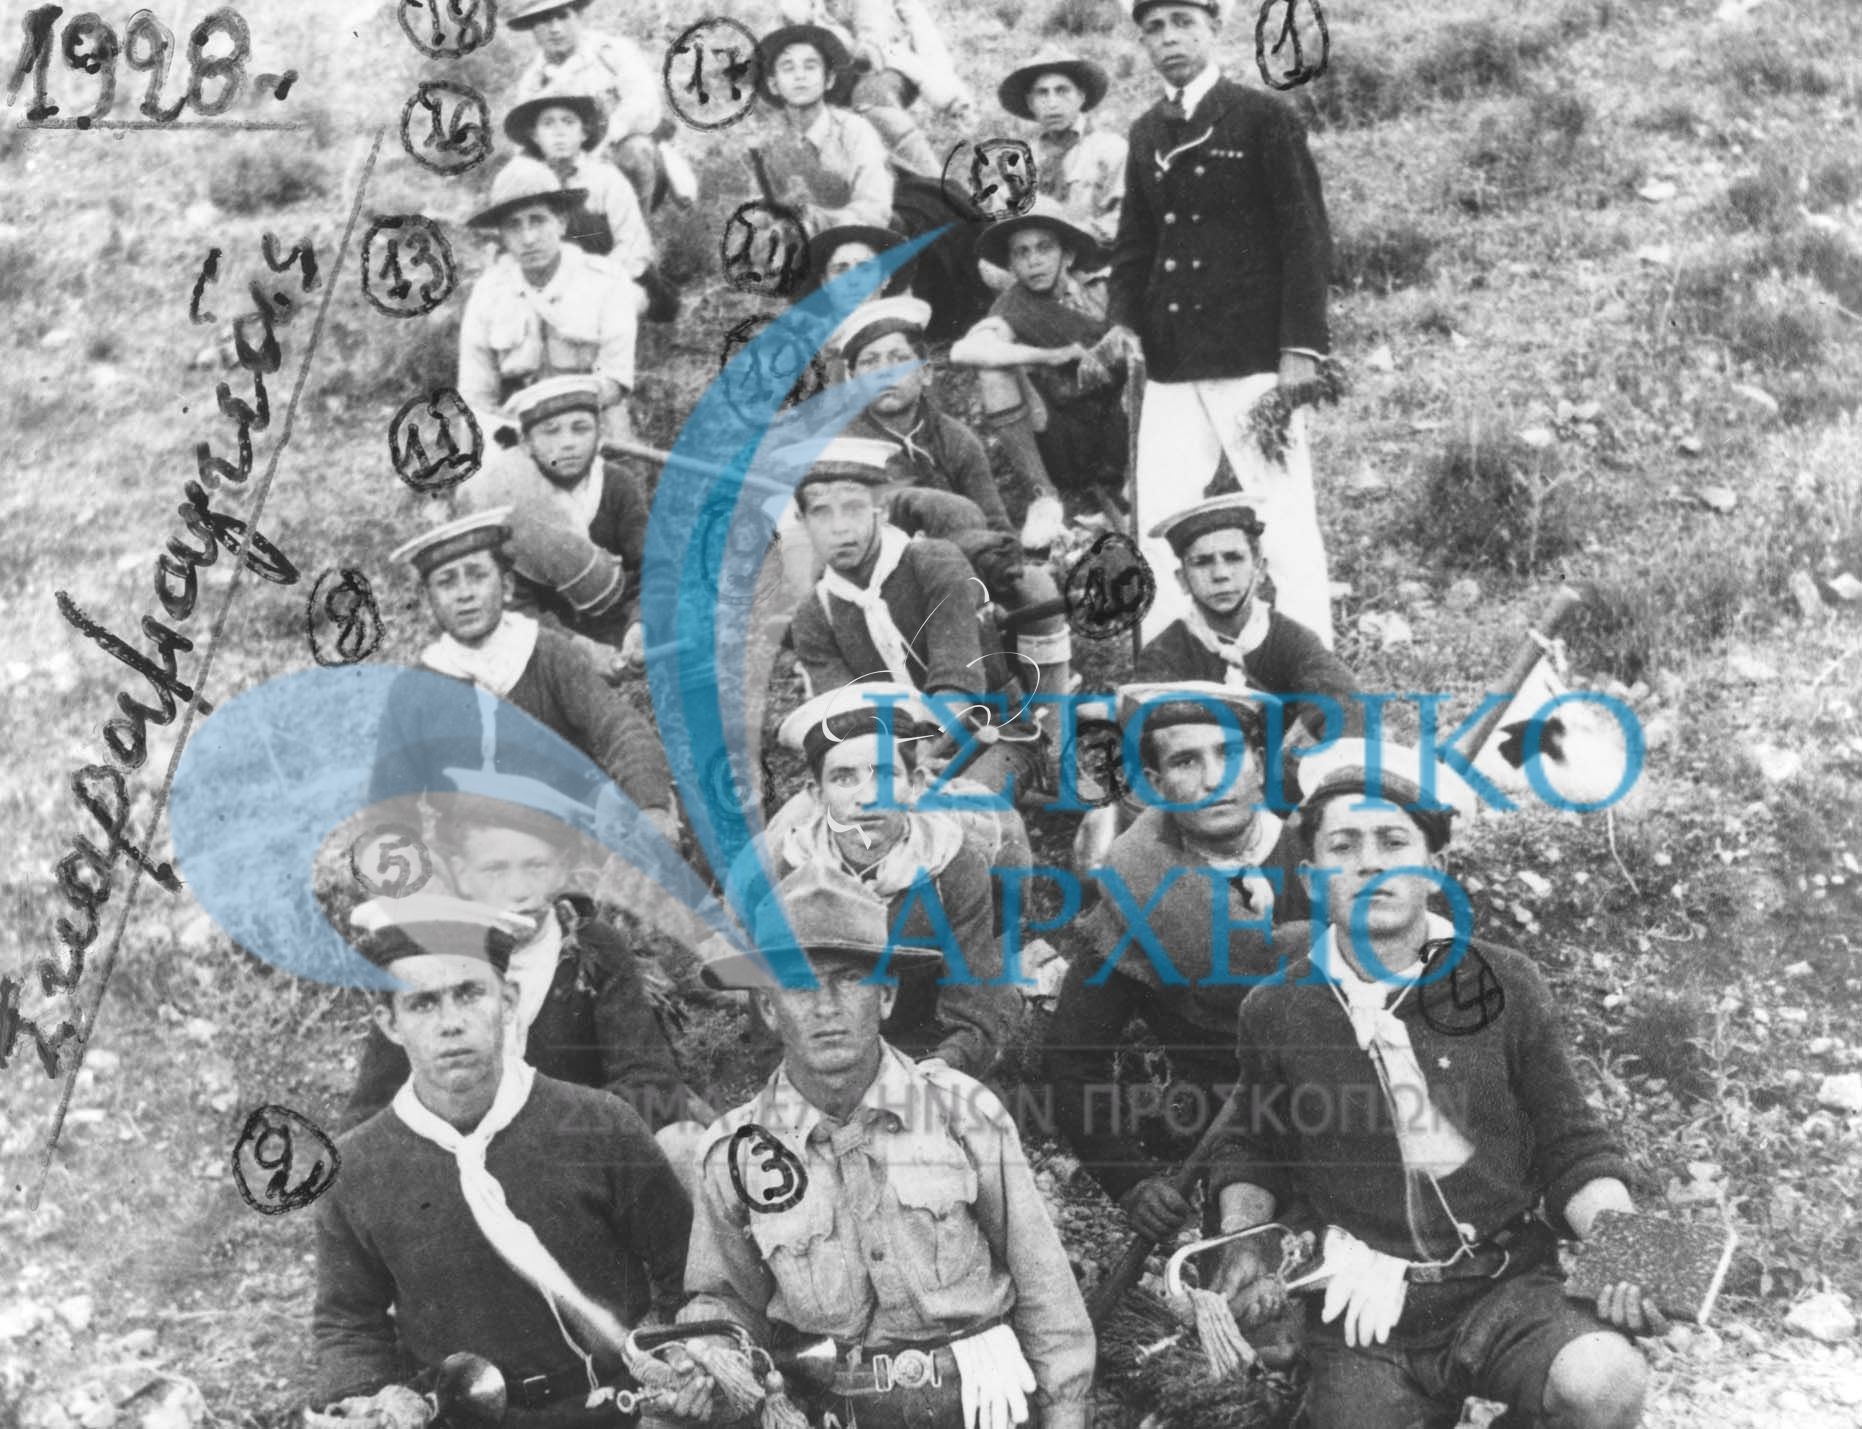 Πρόσκοποι Νίκαιας Πειραιά το 1928 σε εκδρομή στον Σκαραμαγκά.